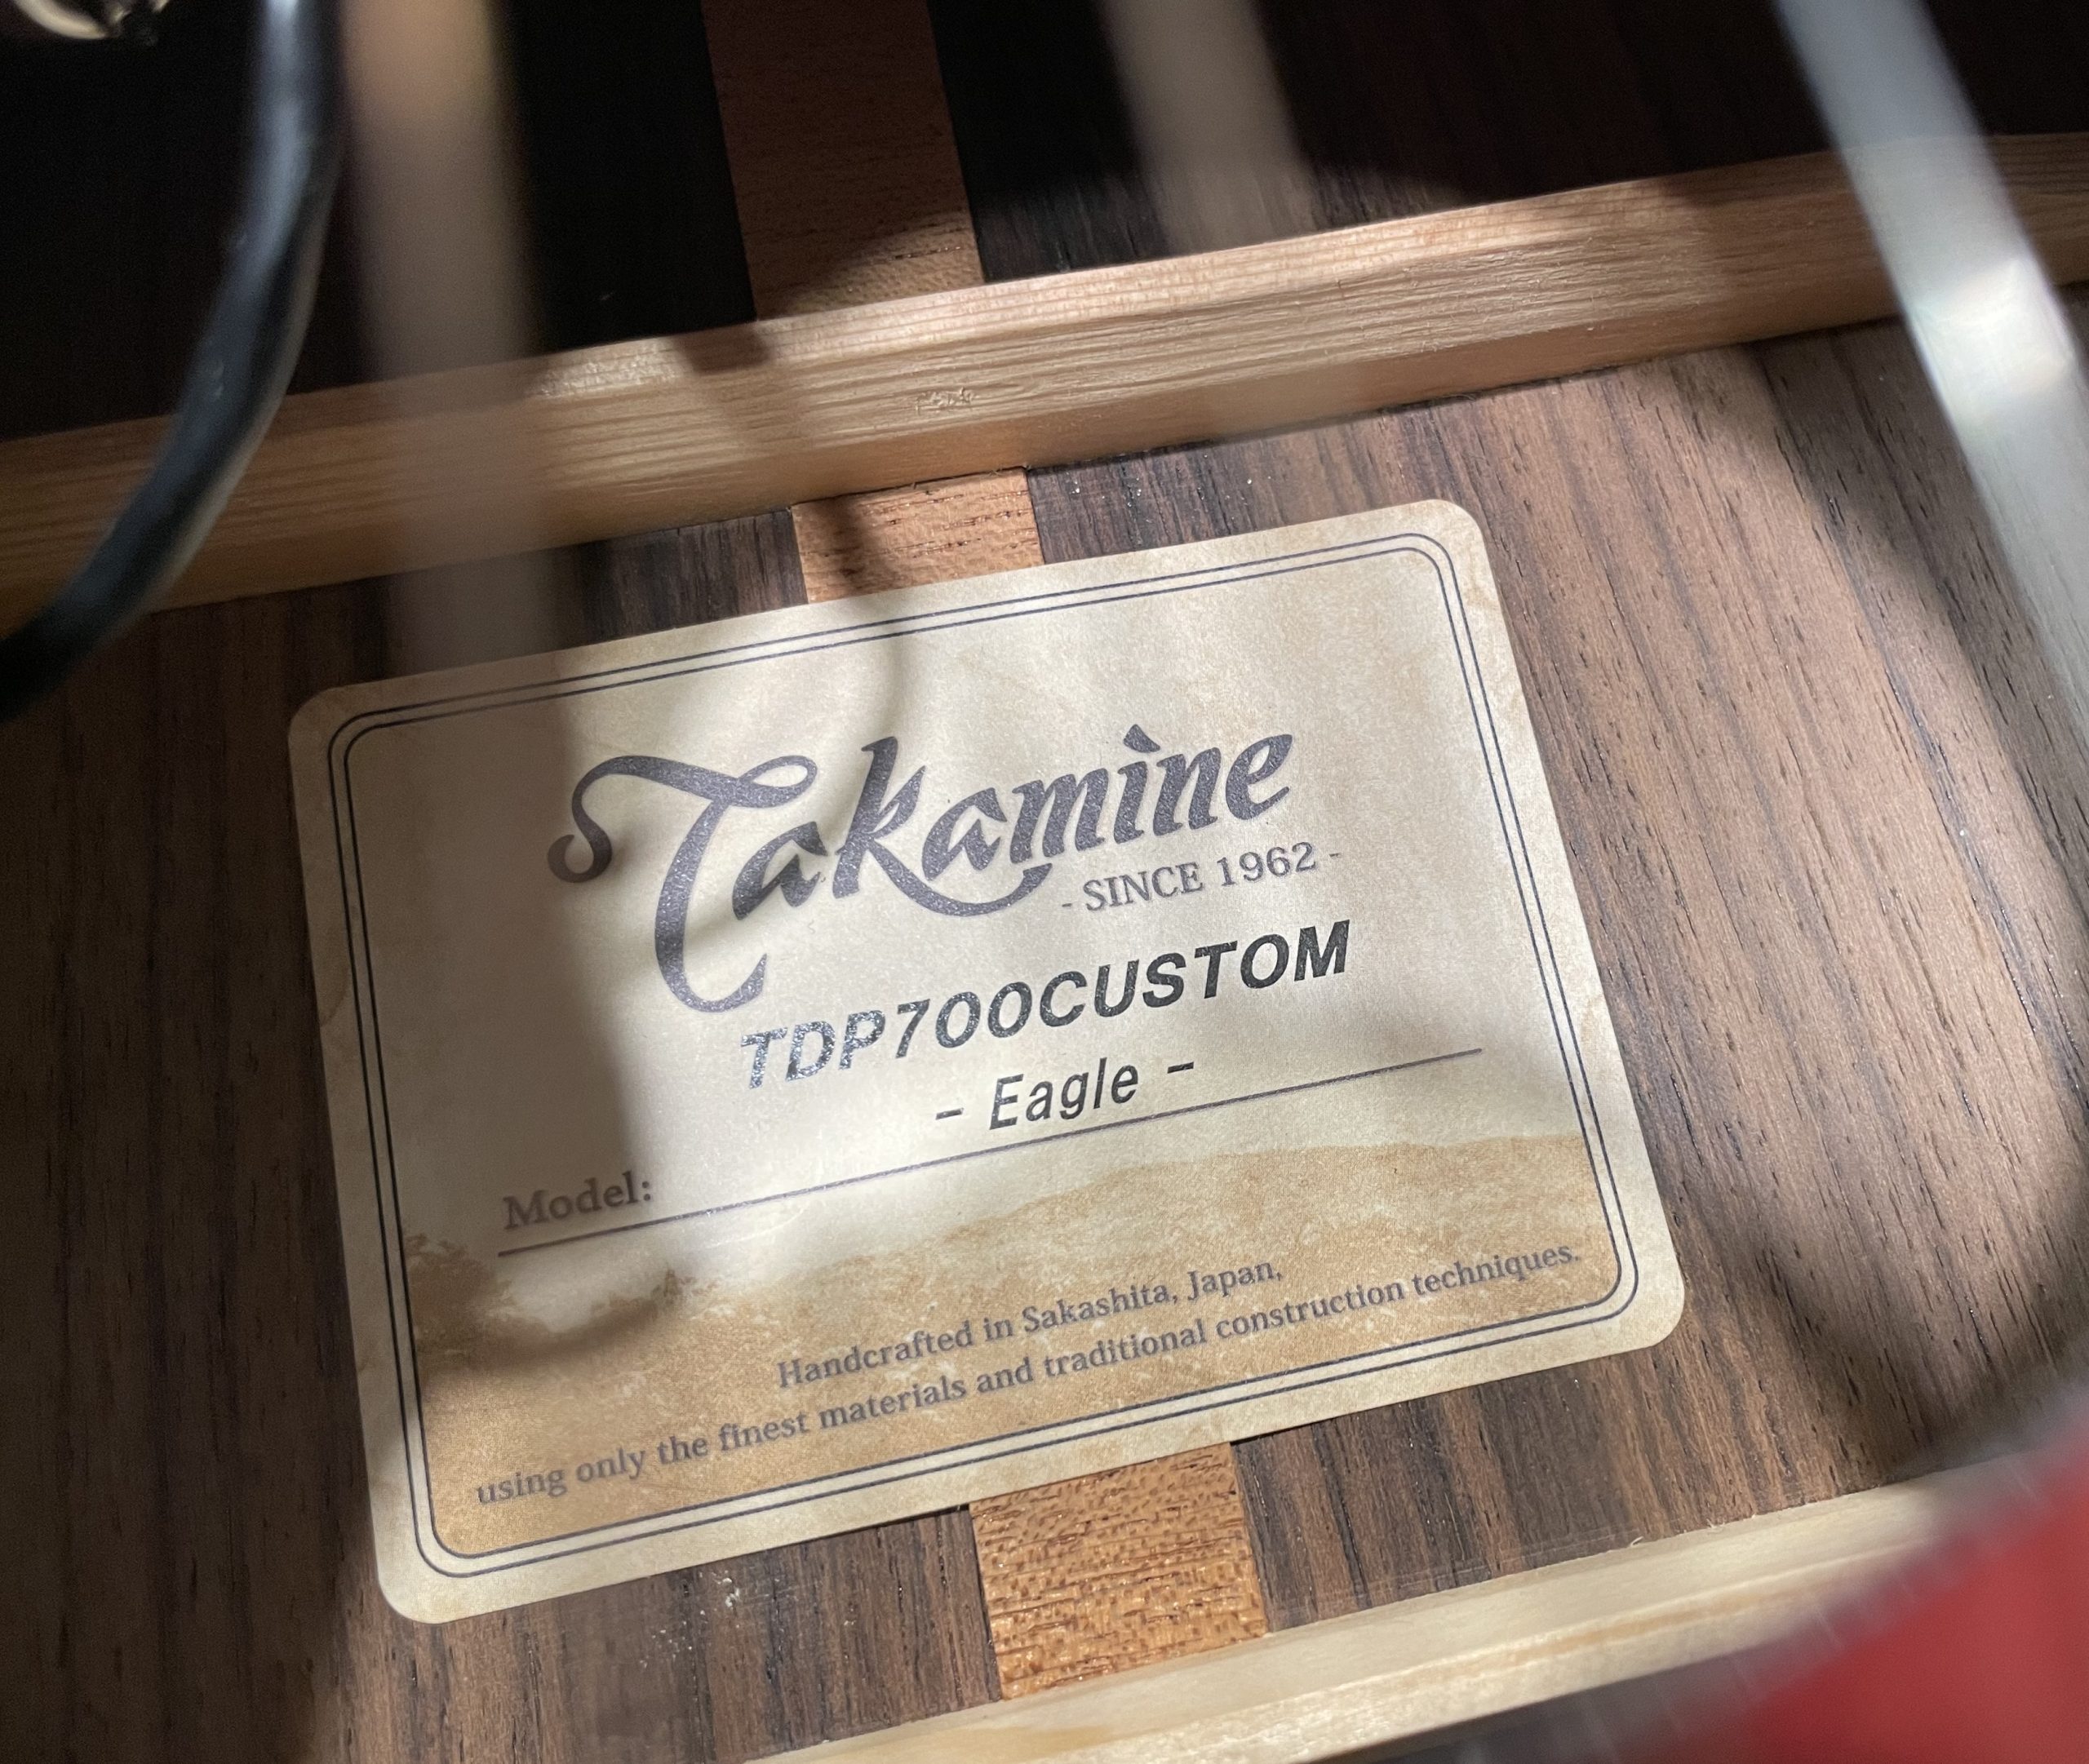 “11本限定モデル”Takamine TDP700CUSTOM -Eagle-の魅力に迫る。【エレアコ】【大阪・梅田】【宅録・ライブ】